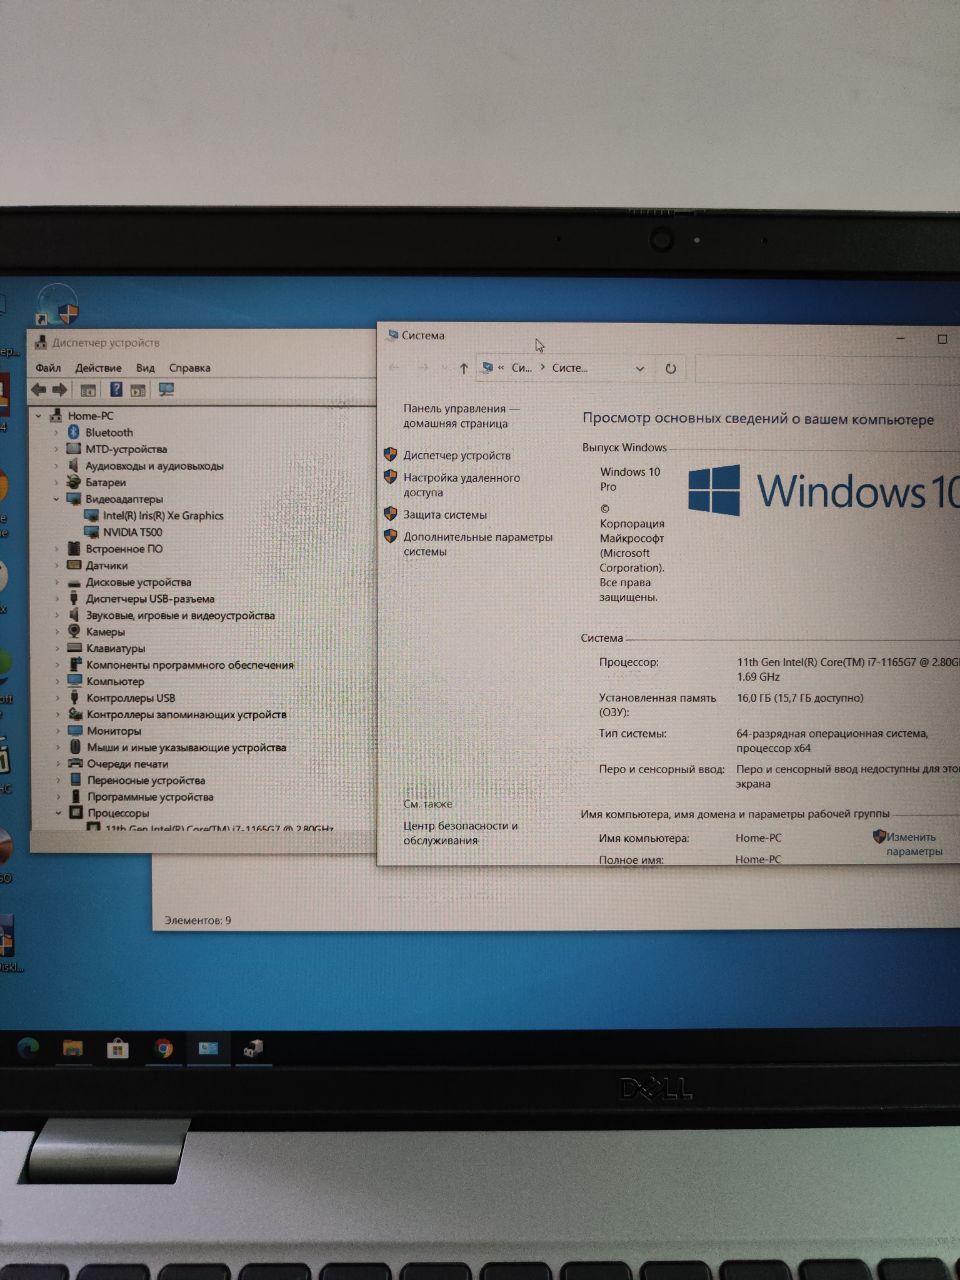 Ноутбук Dell 3560
Windows 10 pro
Intel R core i7-1165G7
Озу 16 gb ddr4